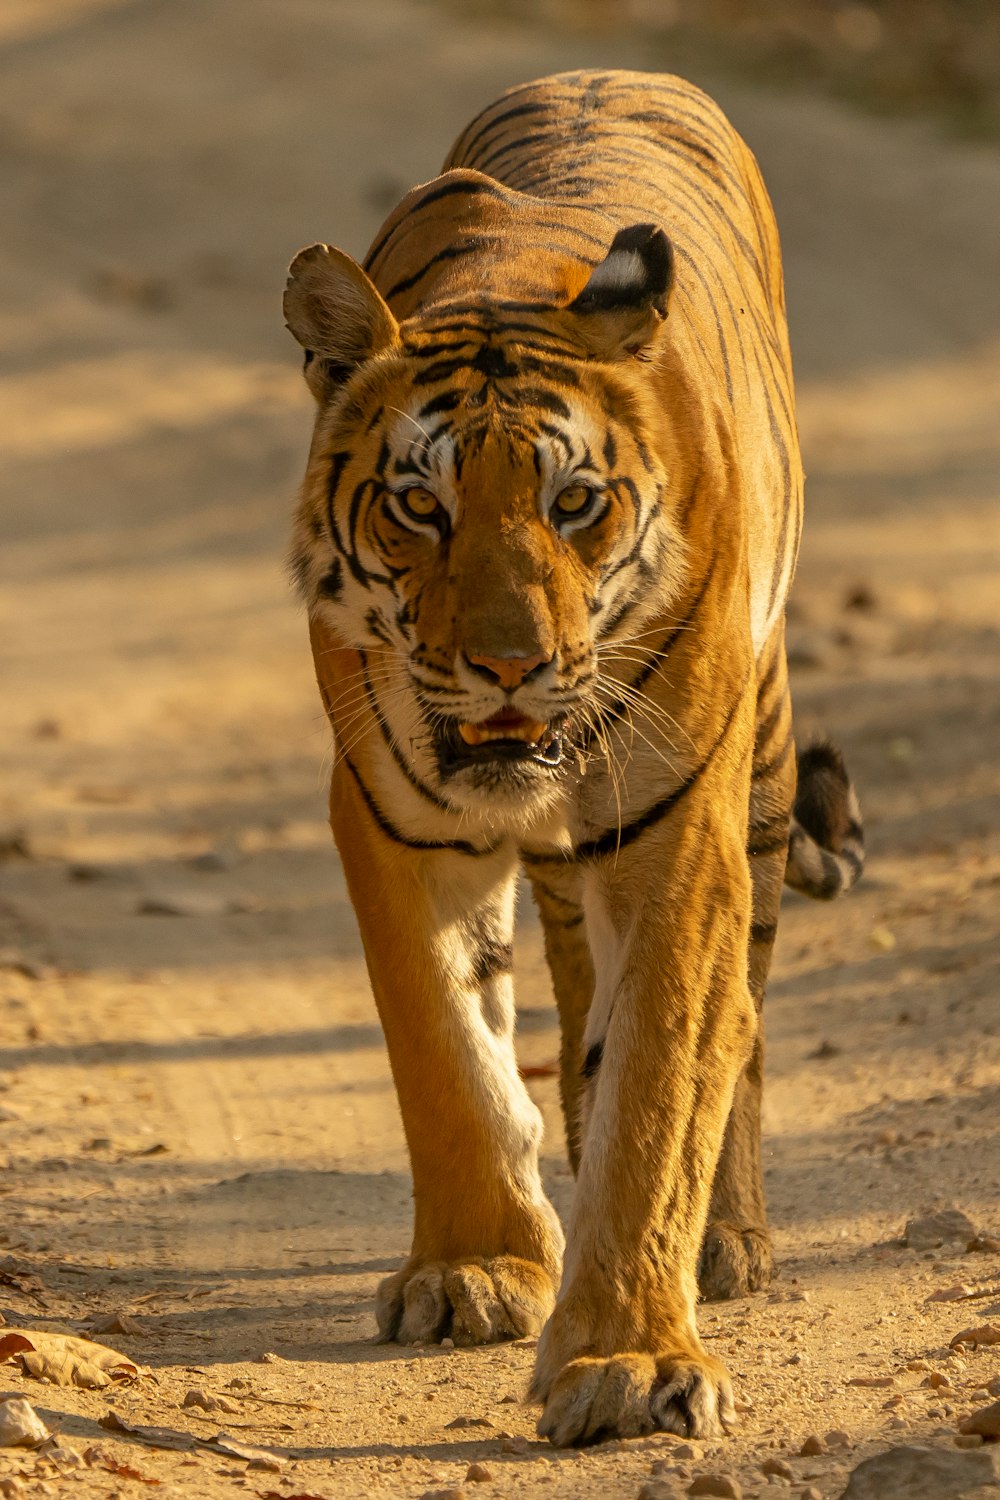 brown tiger walking on brown sand during daytime